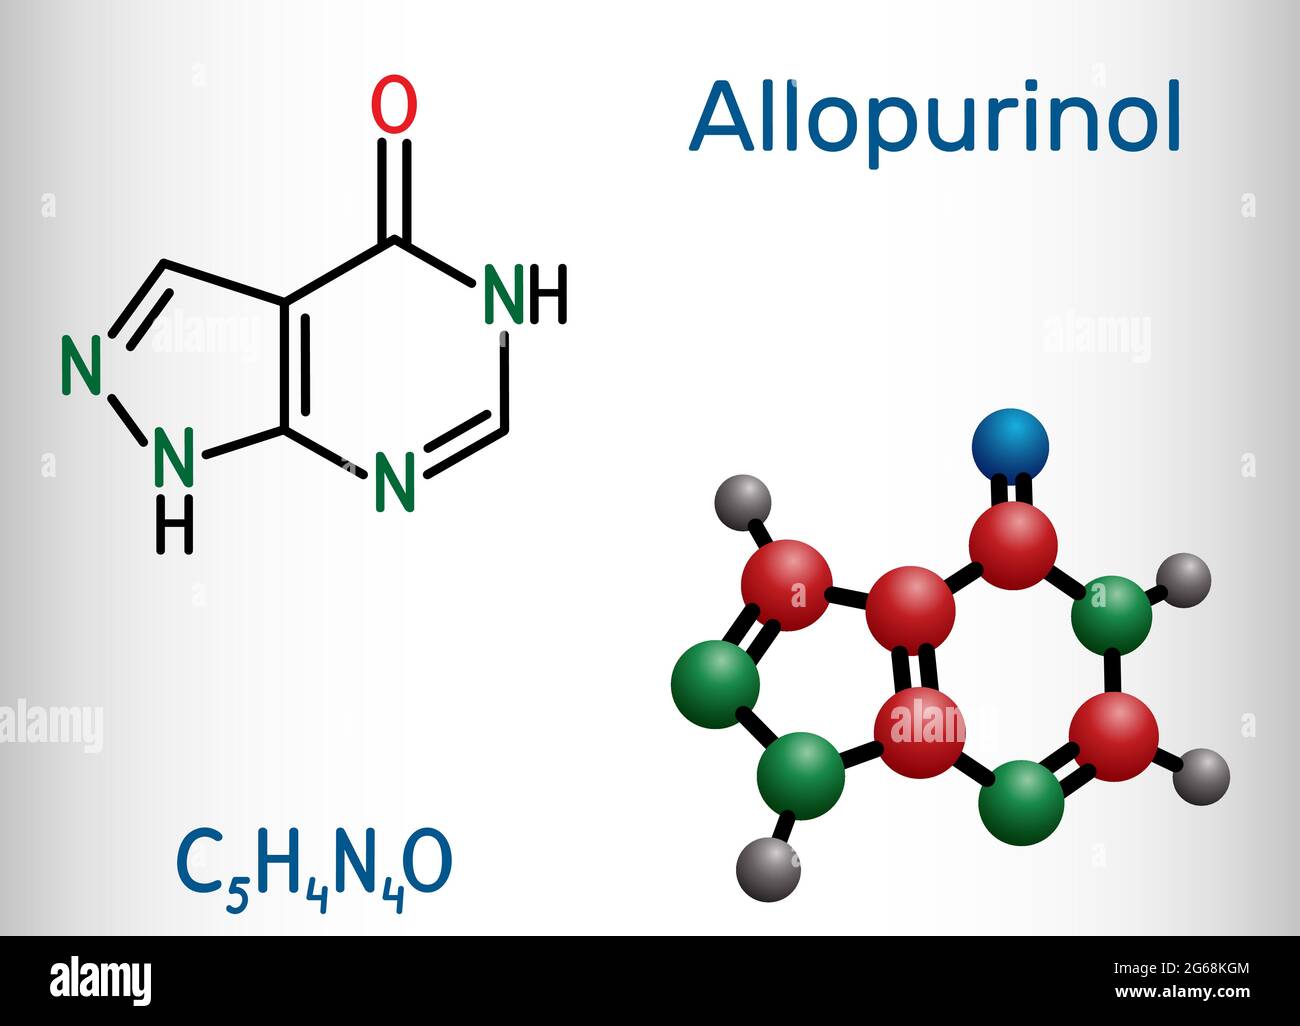 Allopurinol-Molekül. Das Medikament ist ein Xanthinoxidase-Hemmer, der  verwendet wird, um hohe Harnsäurespiegel im Blut zu senken. Strukturelle  chemische Formel und Molekülmodell Stock-Vektorgrafik - Alamy